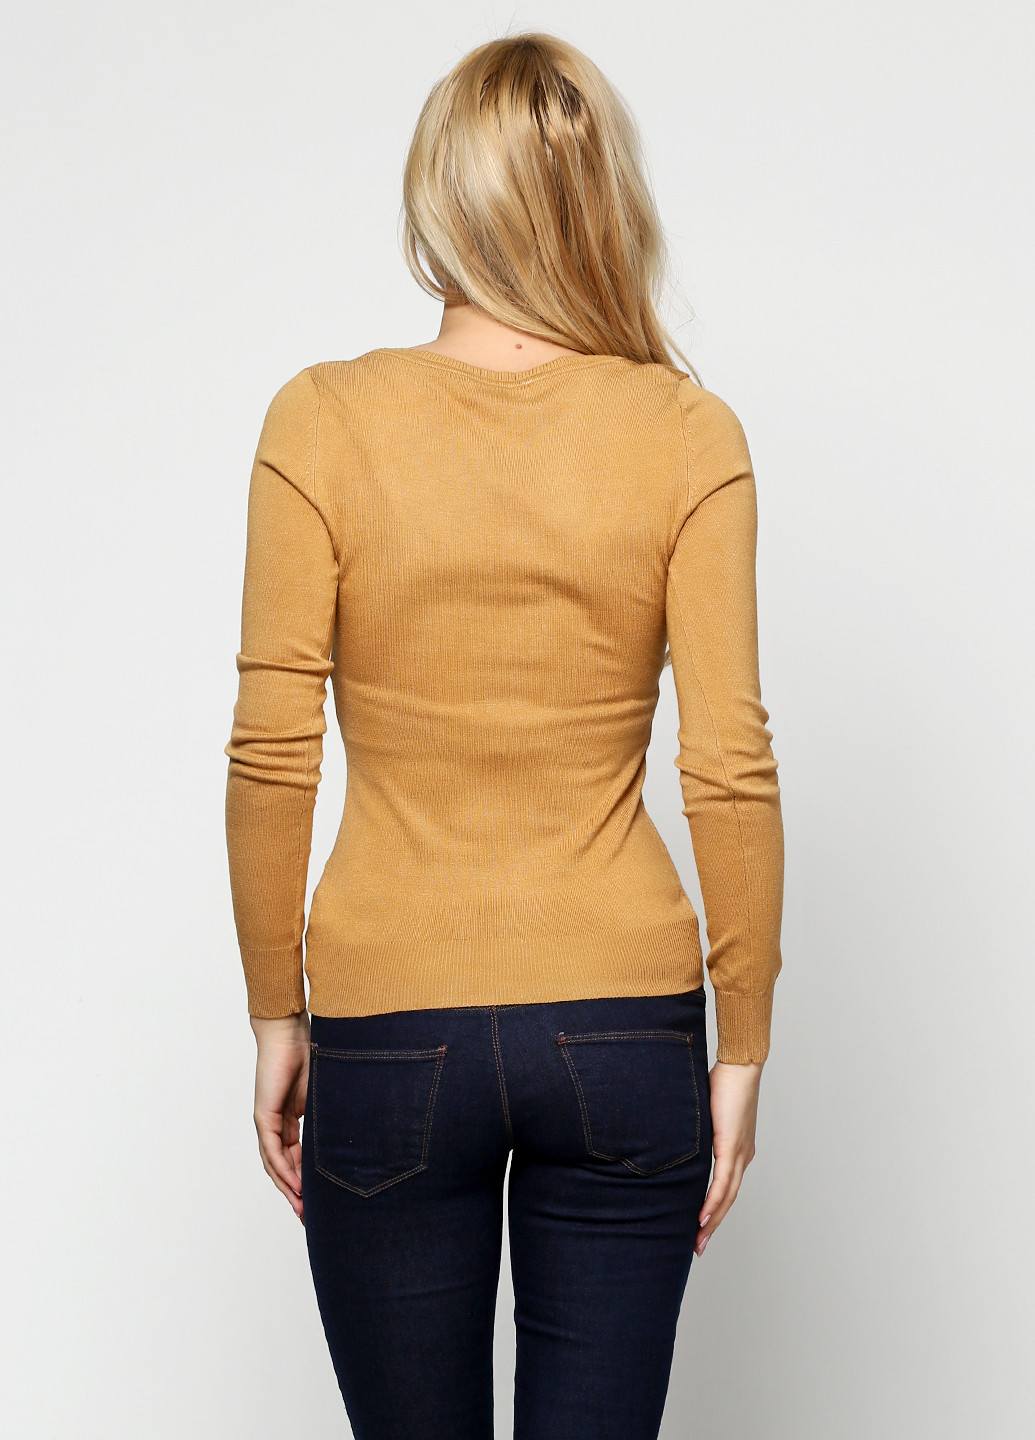 Светло-коричневый демисезонный пуловер пуловер Zara